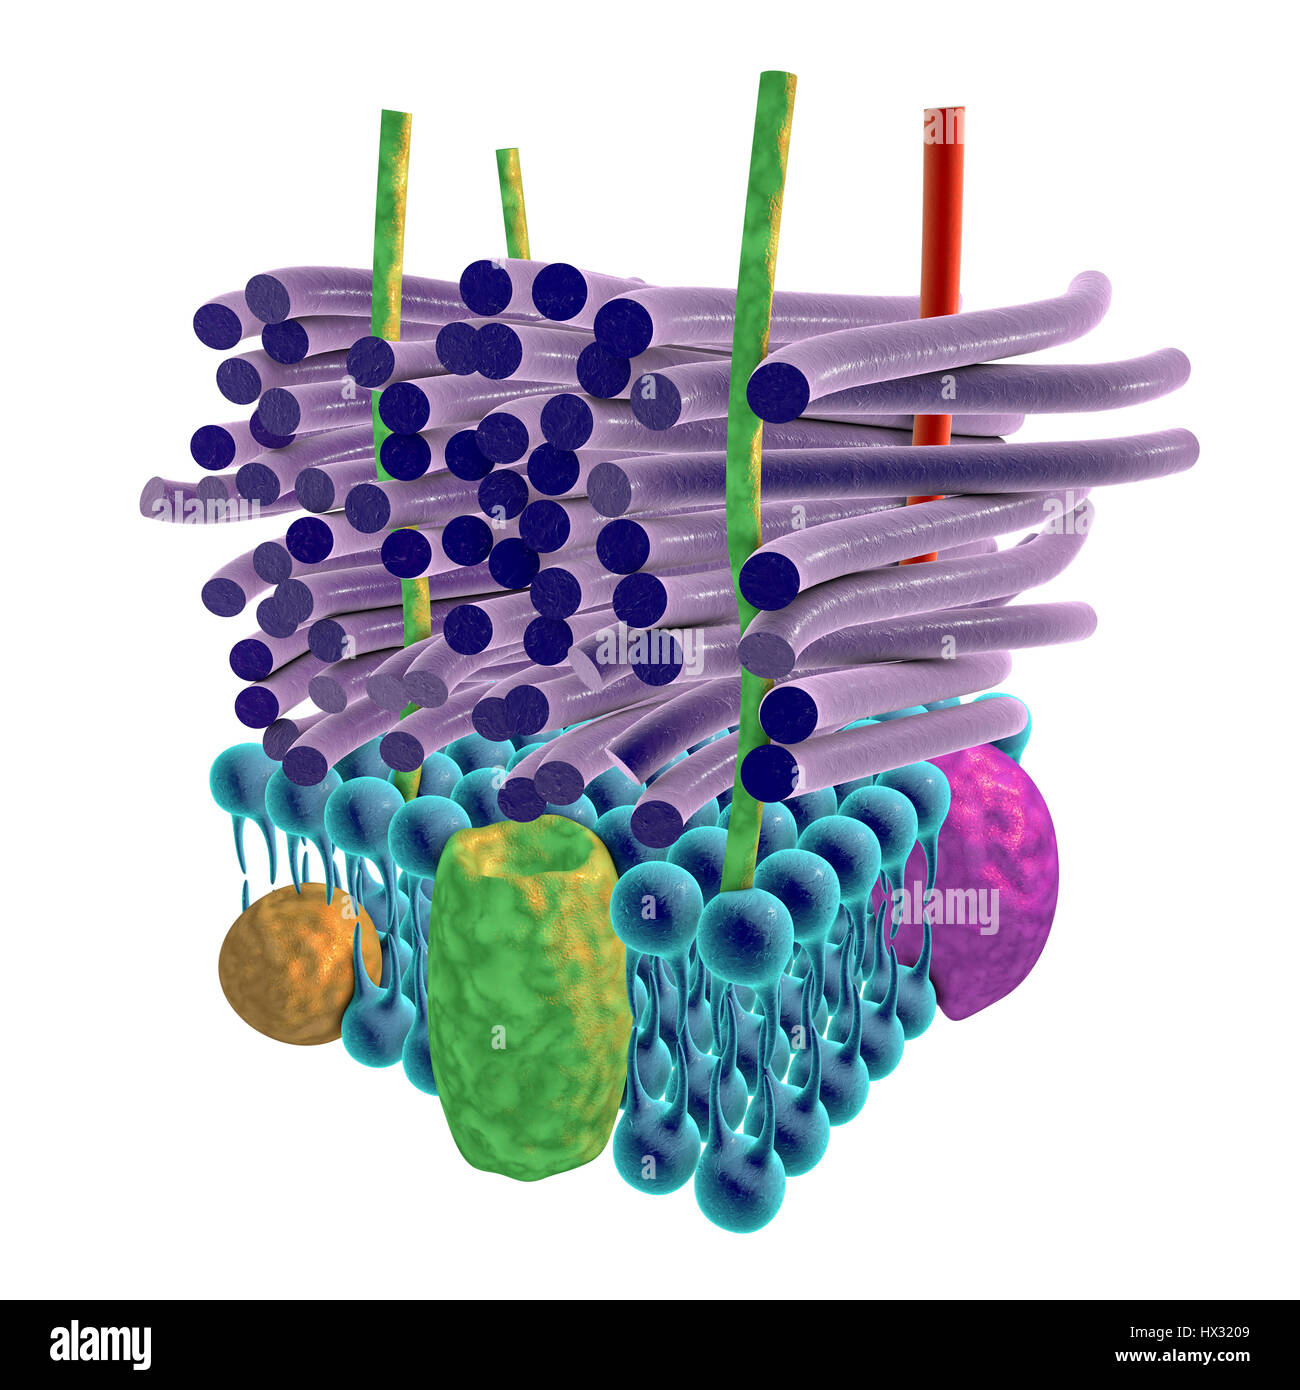 Bactéries Gram-positives paroi cellulaire bactérienne, artwork. Les couches horizontales : une membrane plasmatique (bleu) contenant des protéines transmembranaires (vert, jaune et violet). Au-dessus c'est une épaisse couche de peptidoglycane (violet) c'est tenue ensemble par des acides teichoïque (rouge) et acides lipoteichoïques (vert). C'est ce qu'on appelle une paroi cellulaire gram positif parce que l'épaisse couche de peptidoglycane conserve la coloration de Gram qui aide à identifier la vie microbienne. Banque D'Images